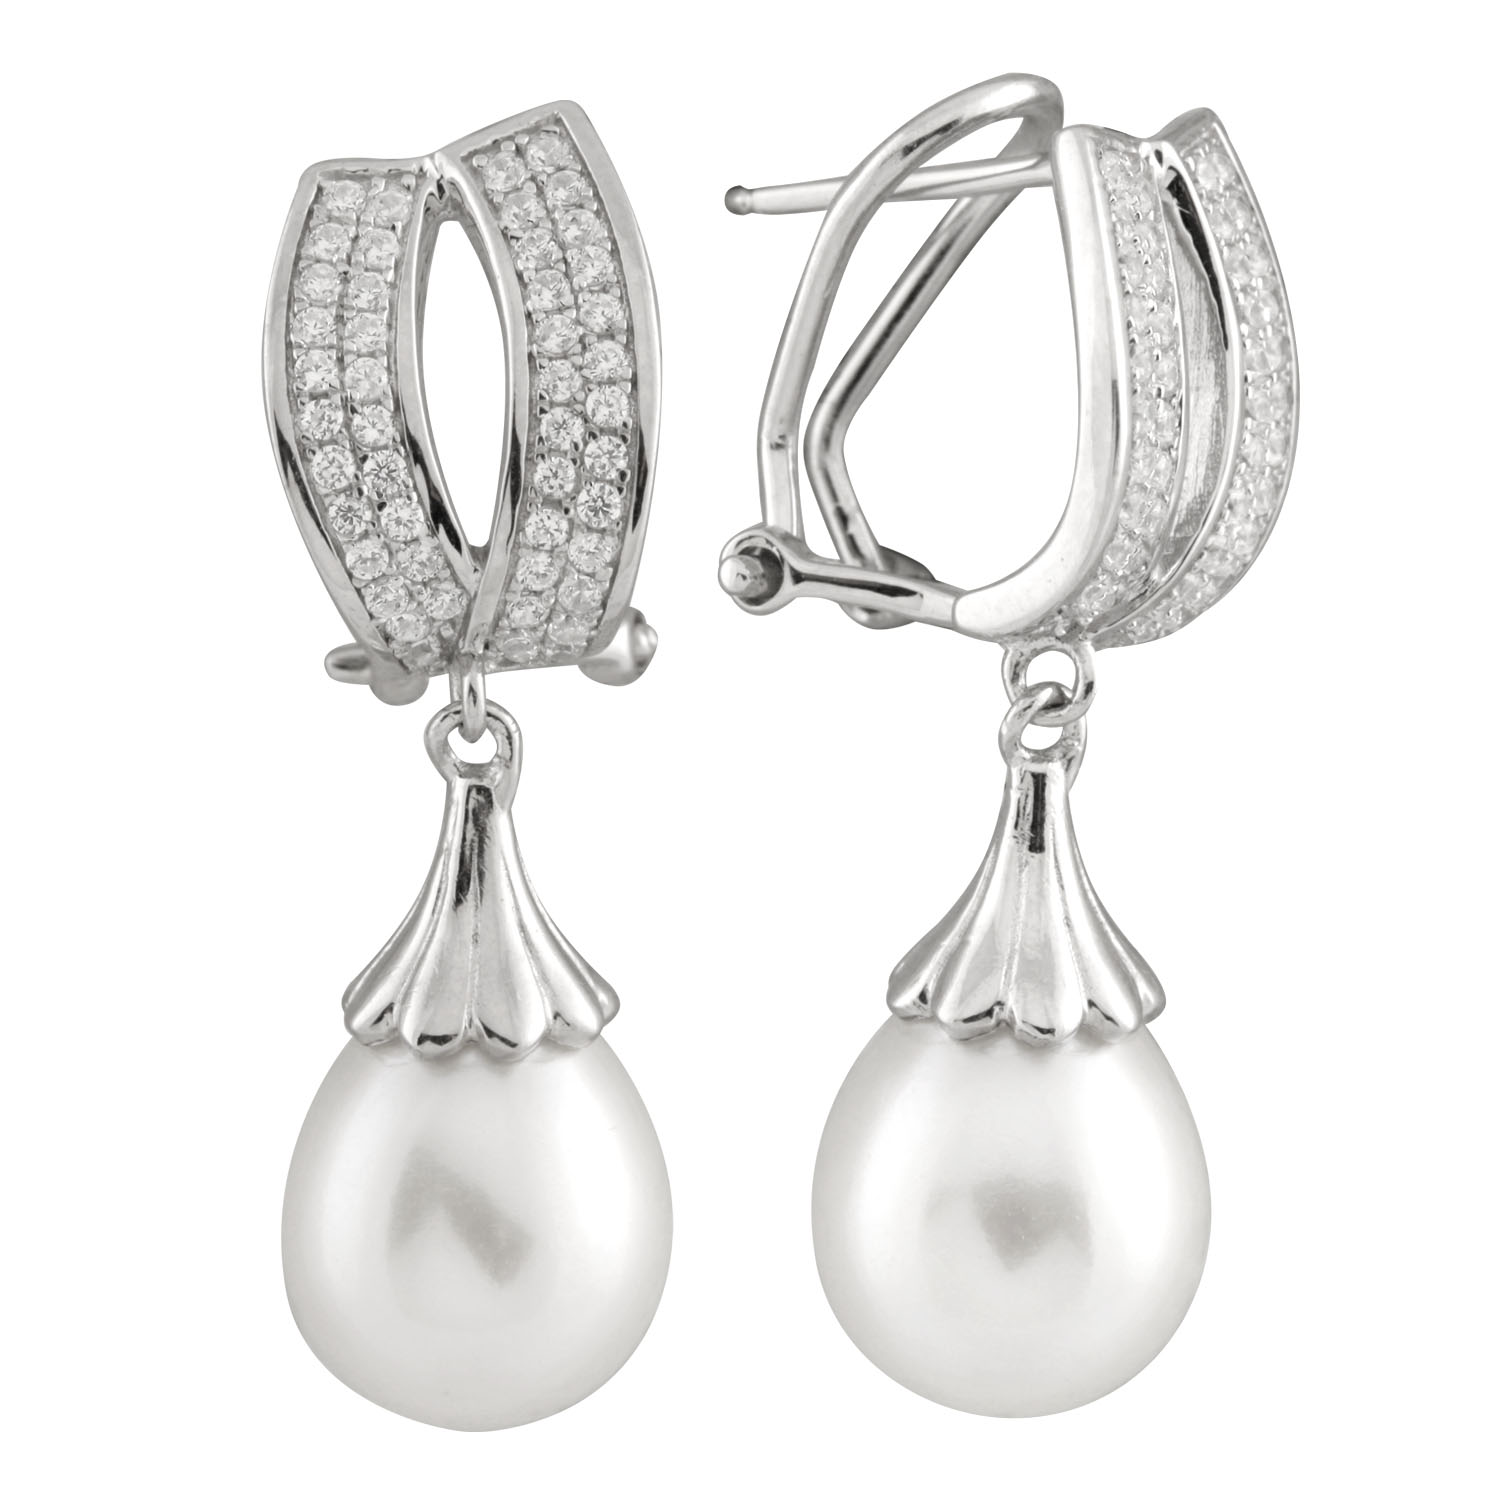 New sterling silver earrings